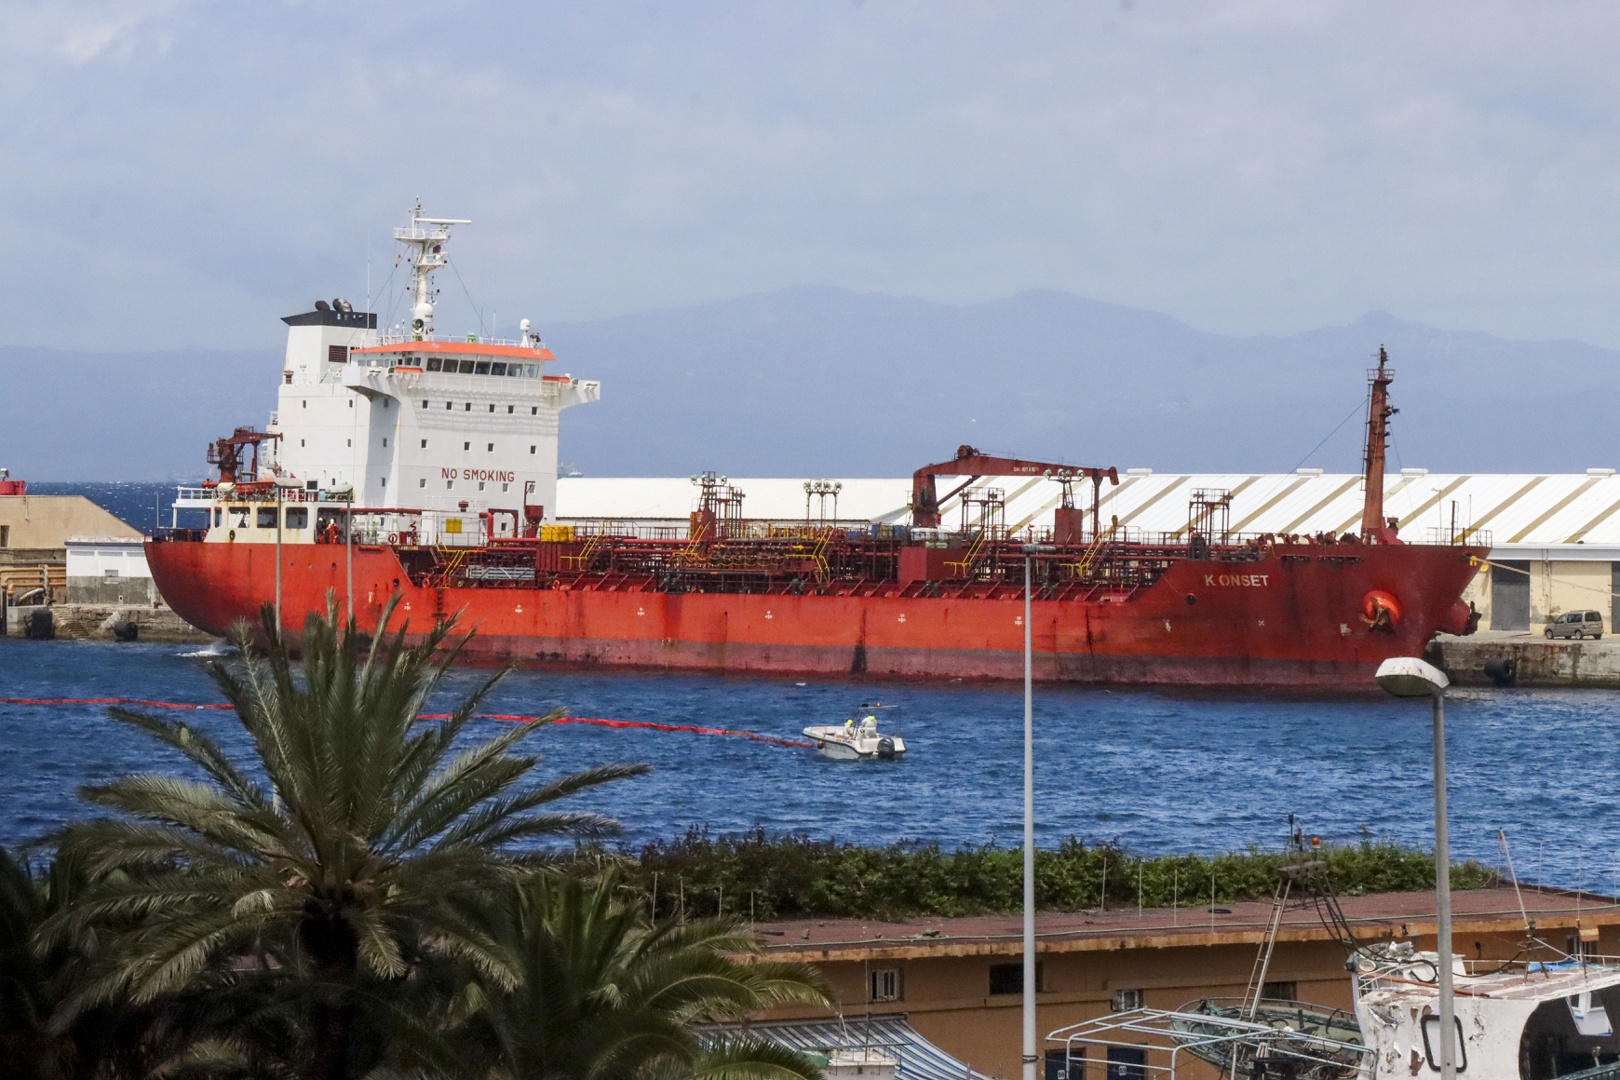 el buque turco vertió más de 27 toneladas de fuel en el puerto de ceuta (españa)